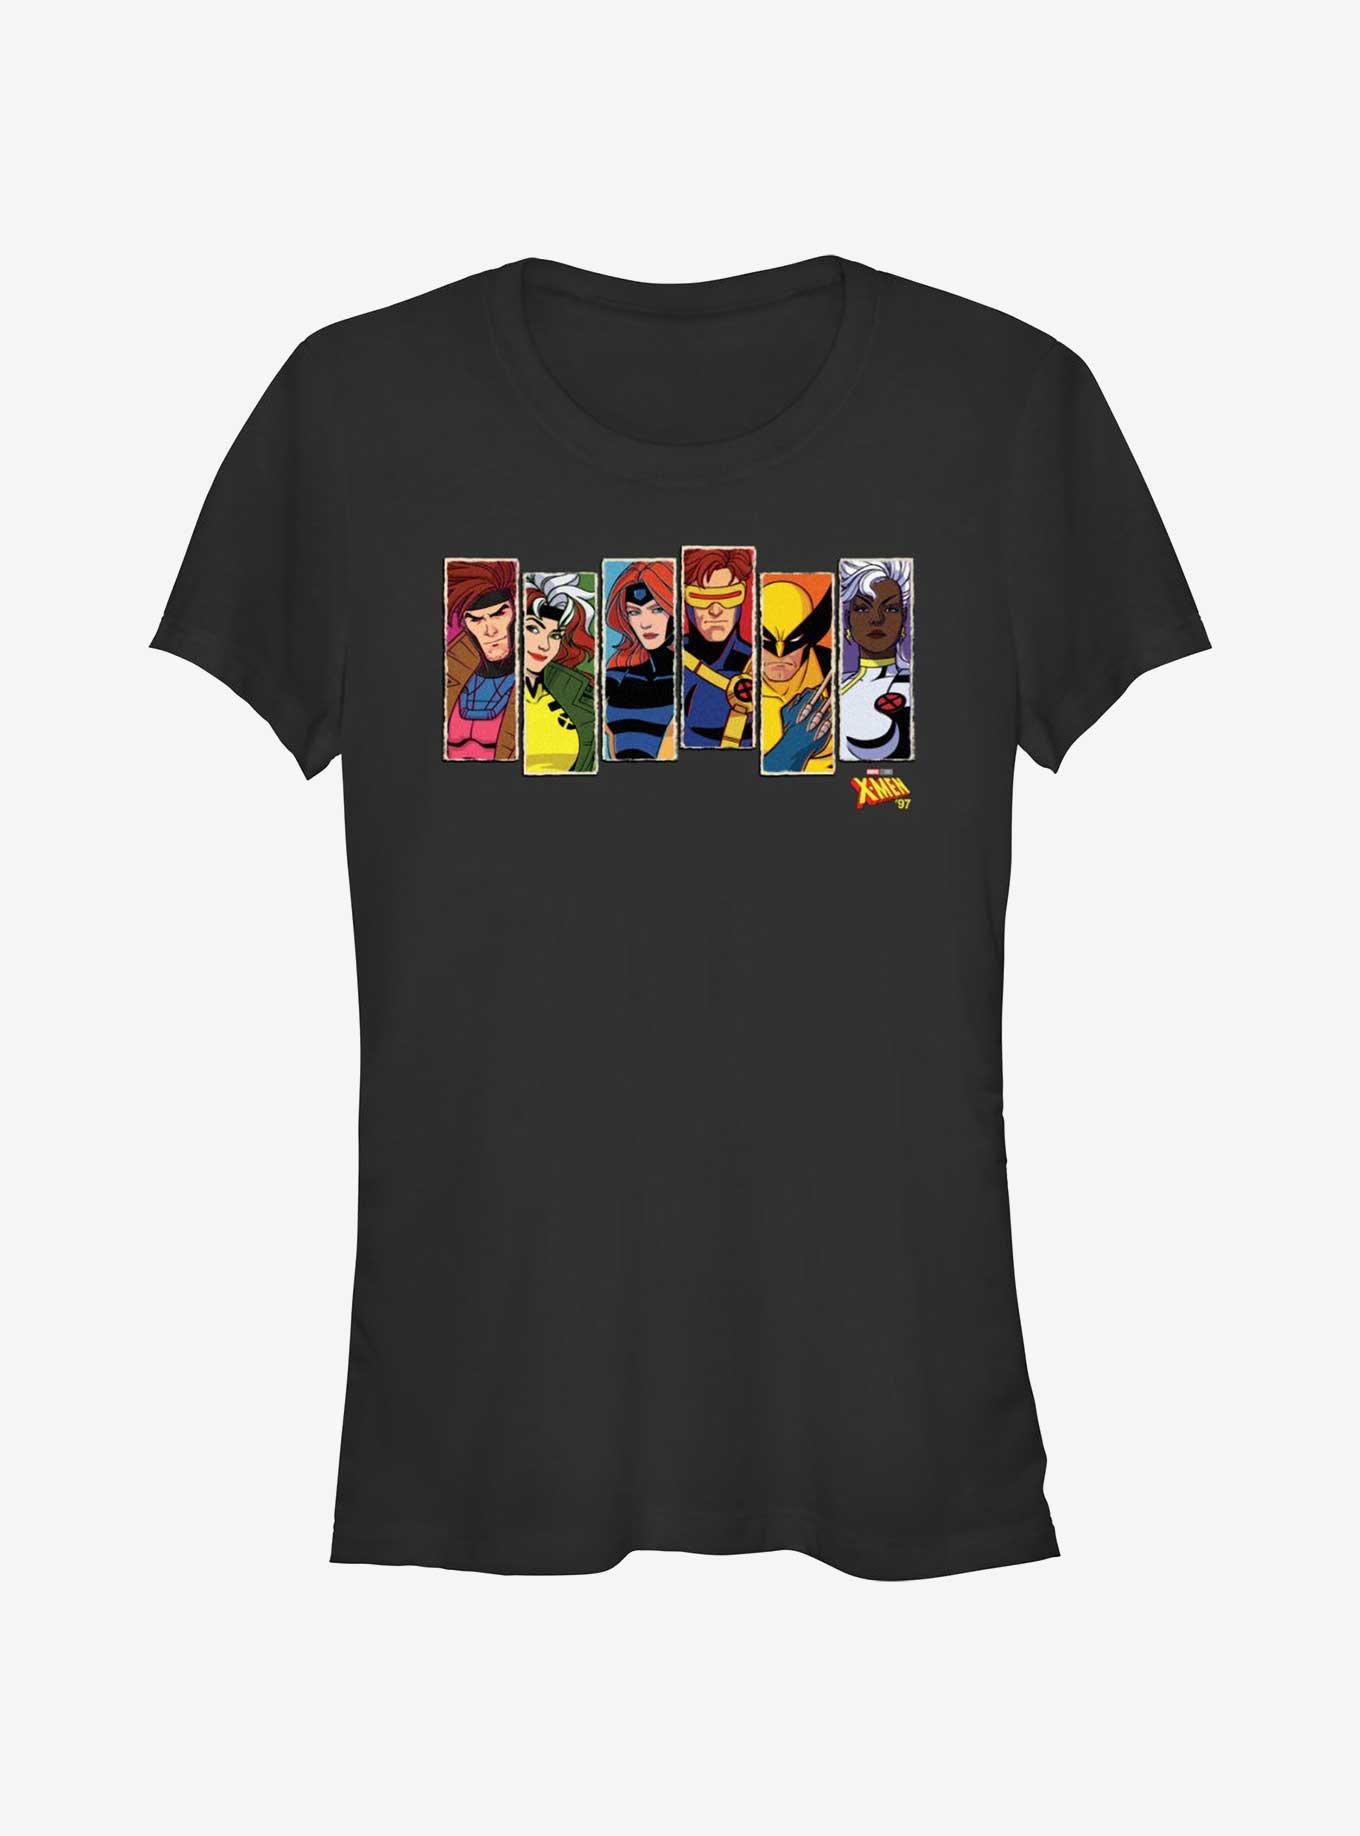 Marvel X-Men '97 Vertical Portraits Girls T-Shirt, BLACK, hi-res